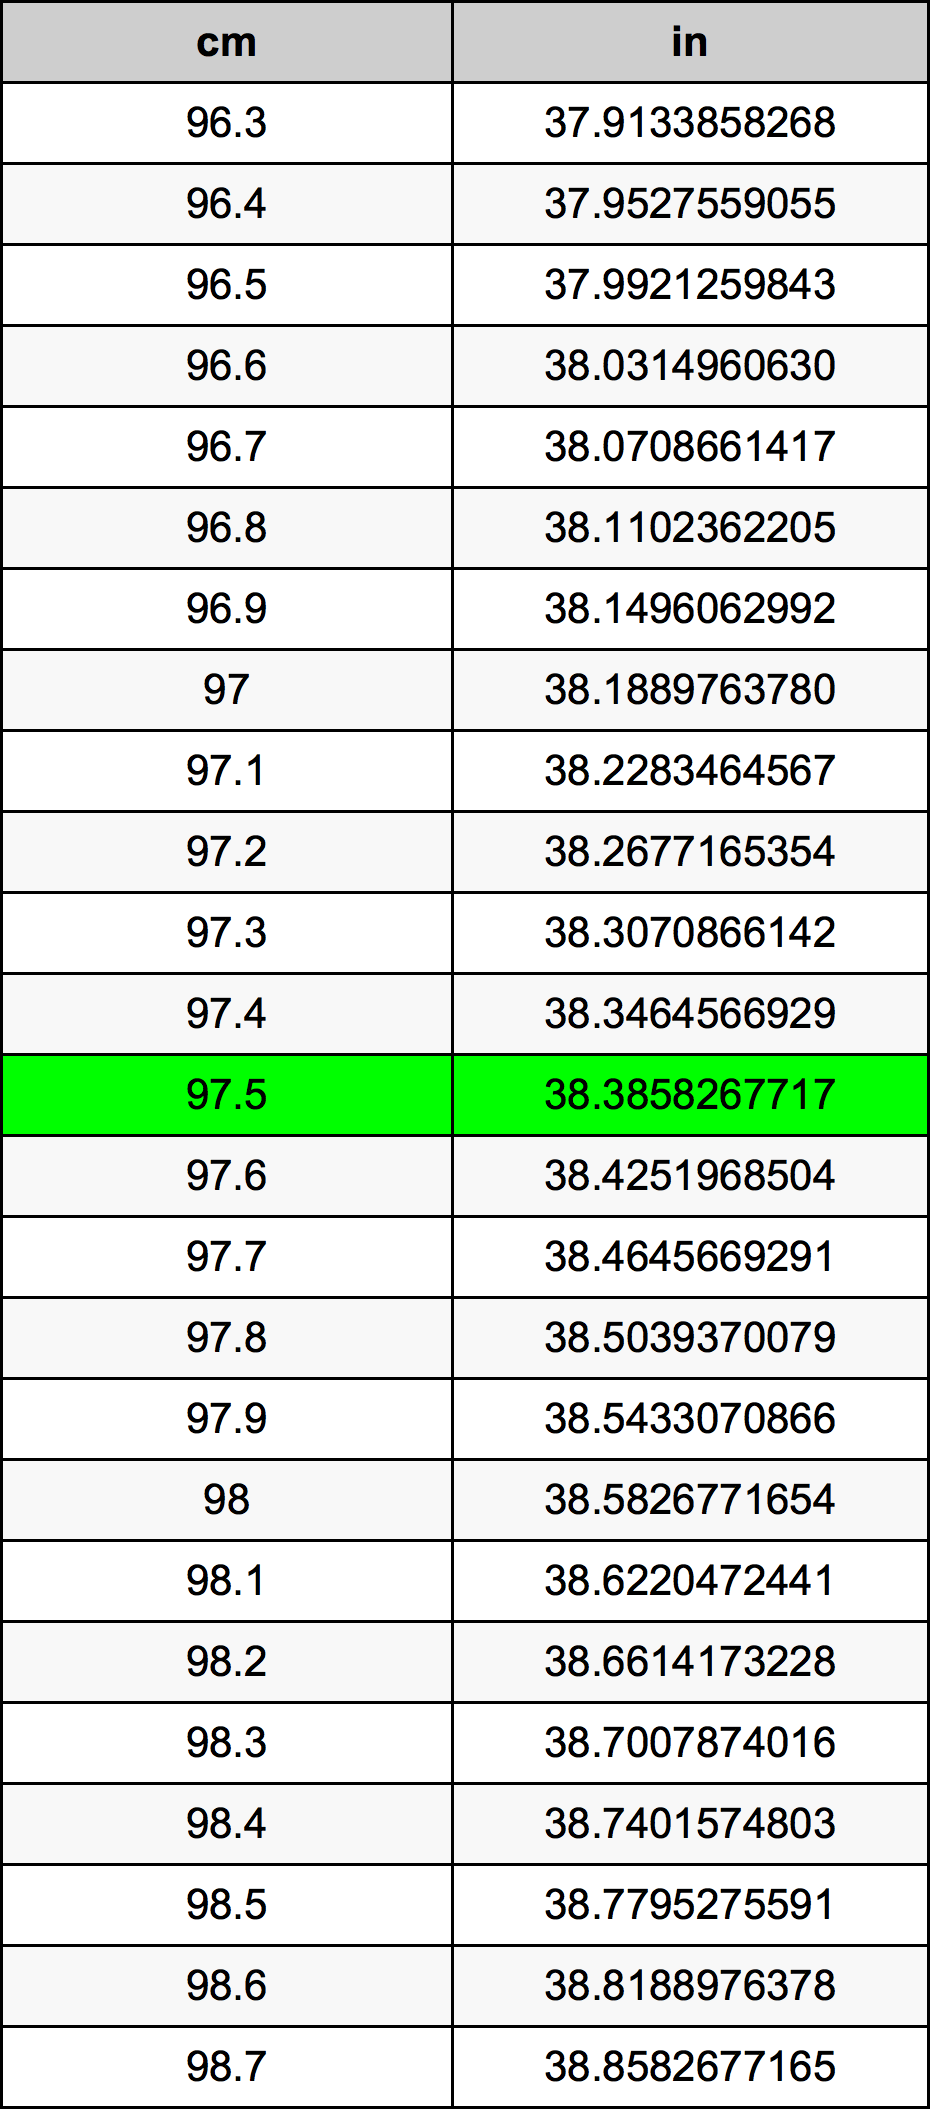 97.5 Centiméter átszámítási táblázat